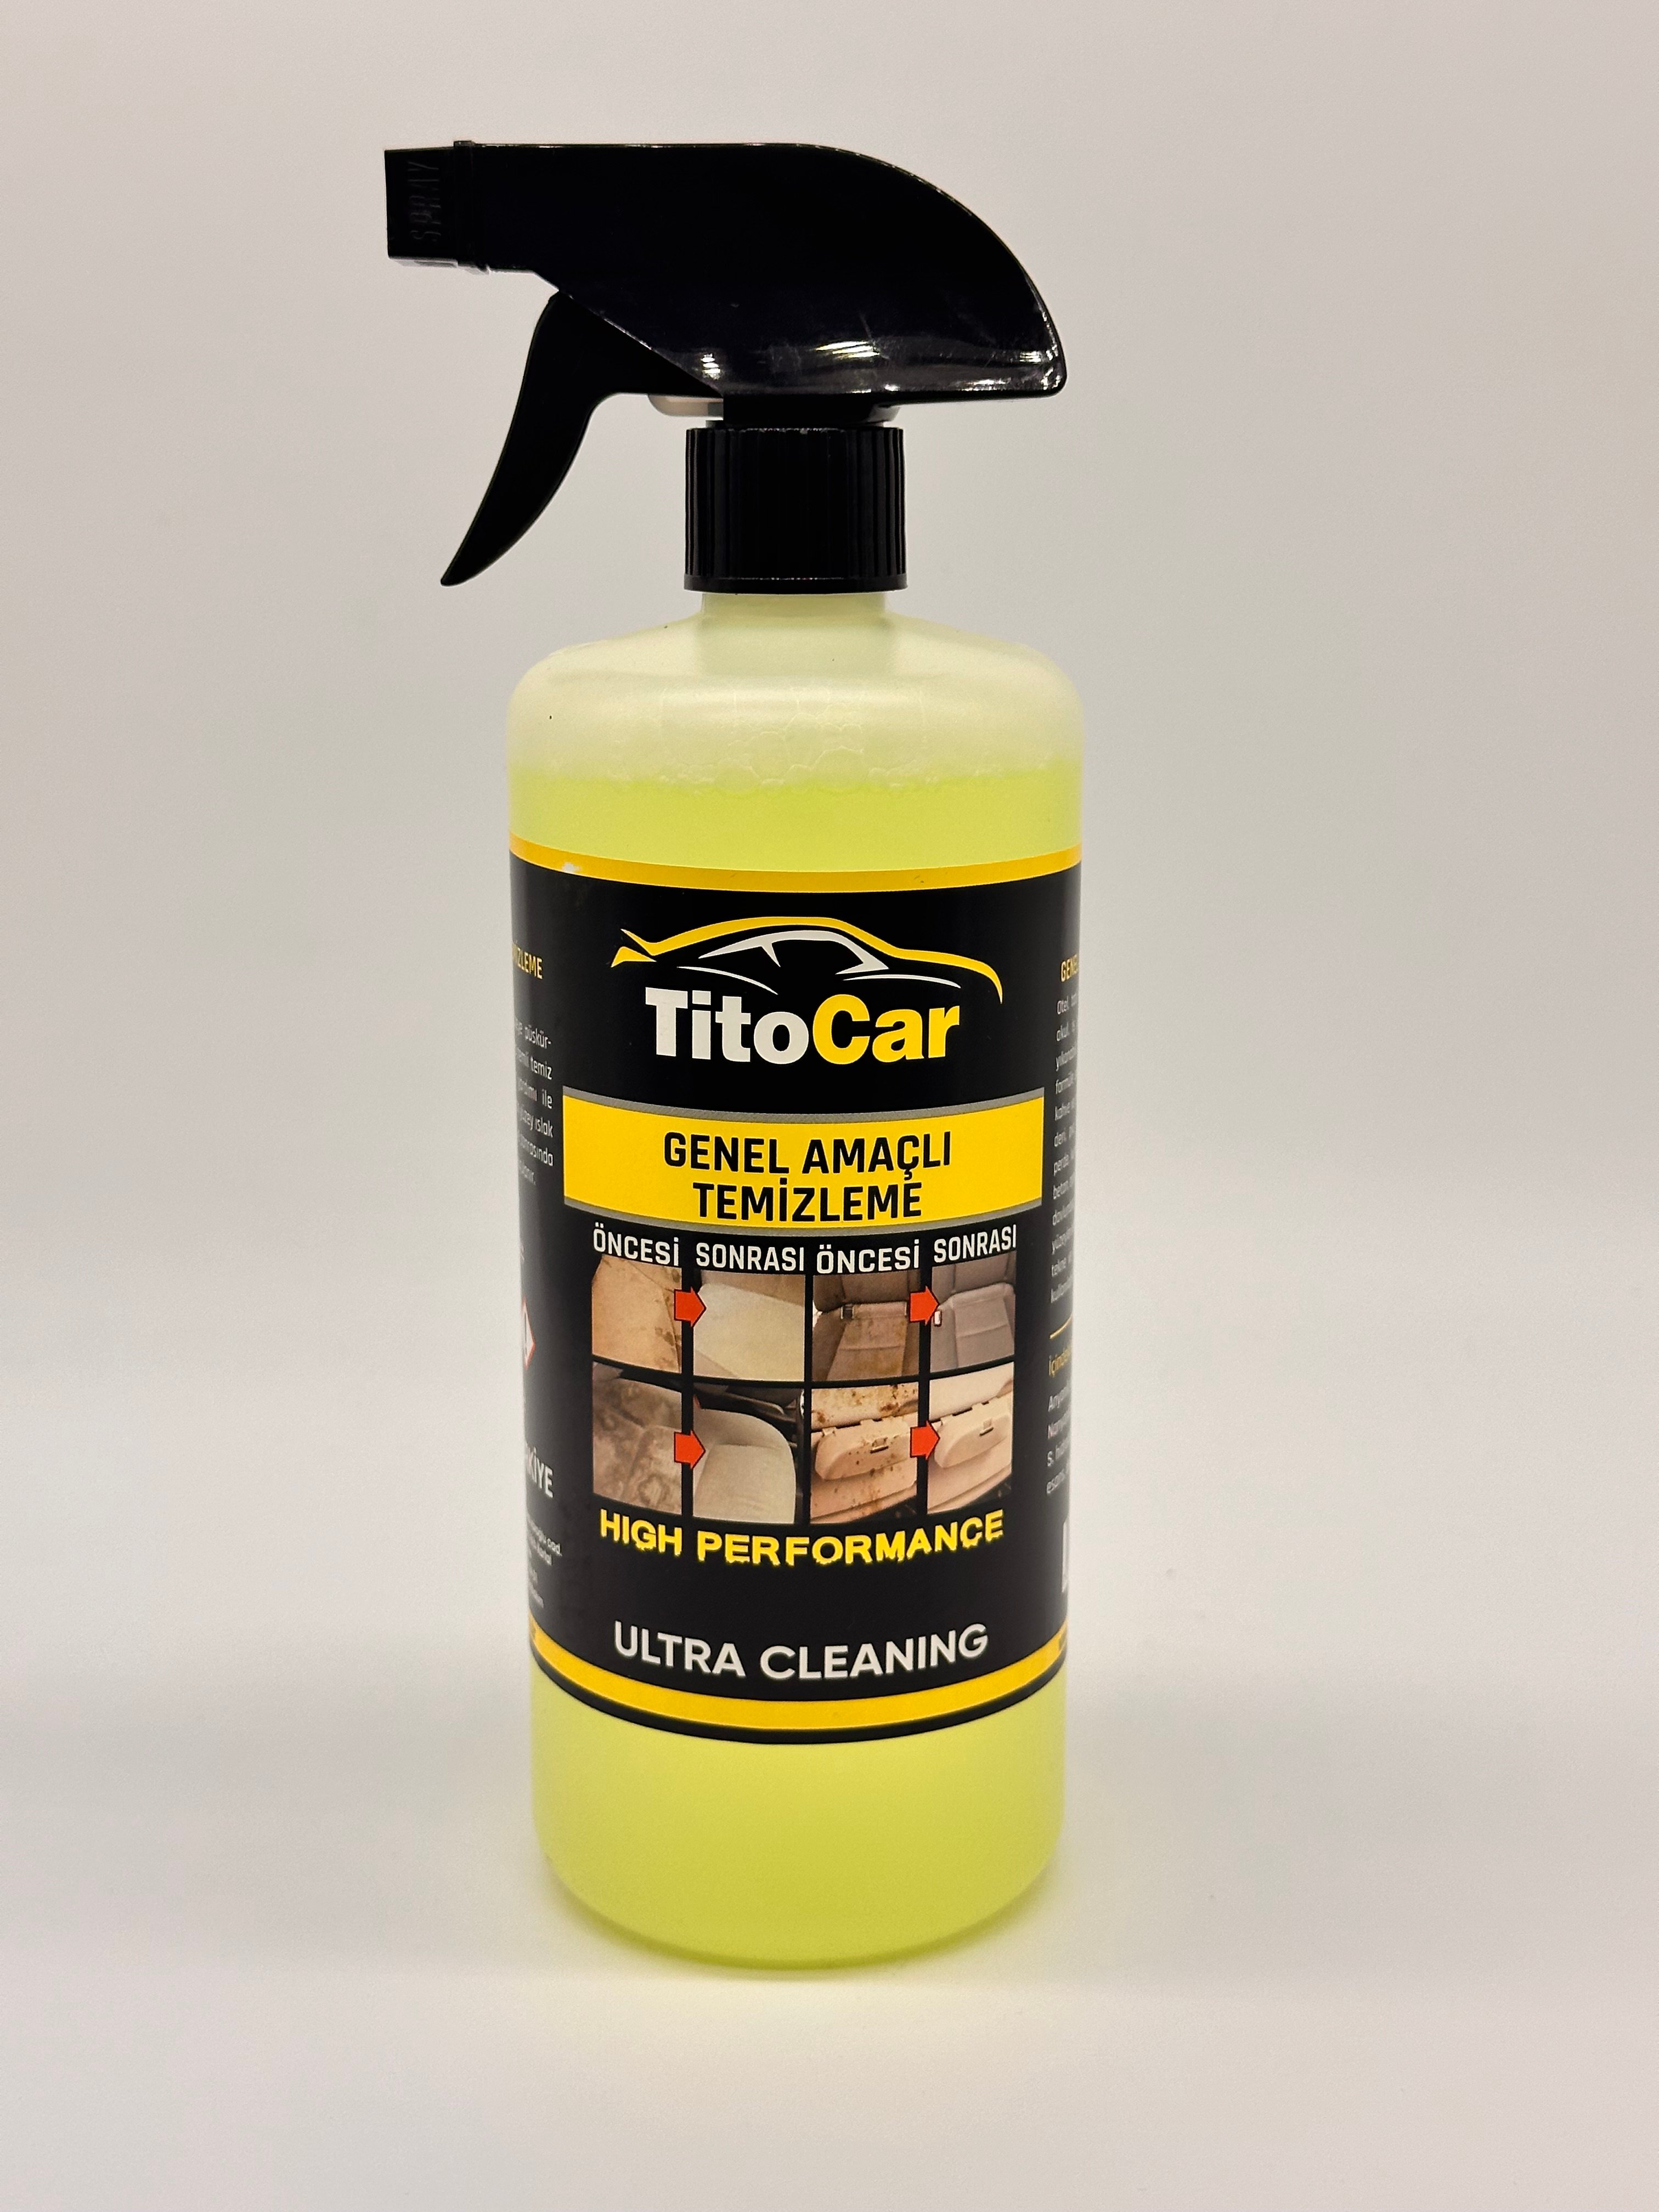 TitoCar Genel Amaçlı Temizleme (Detay İlacı) Sıvısı 750 ml